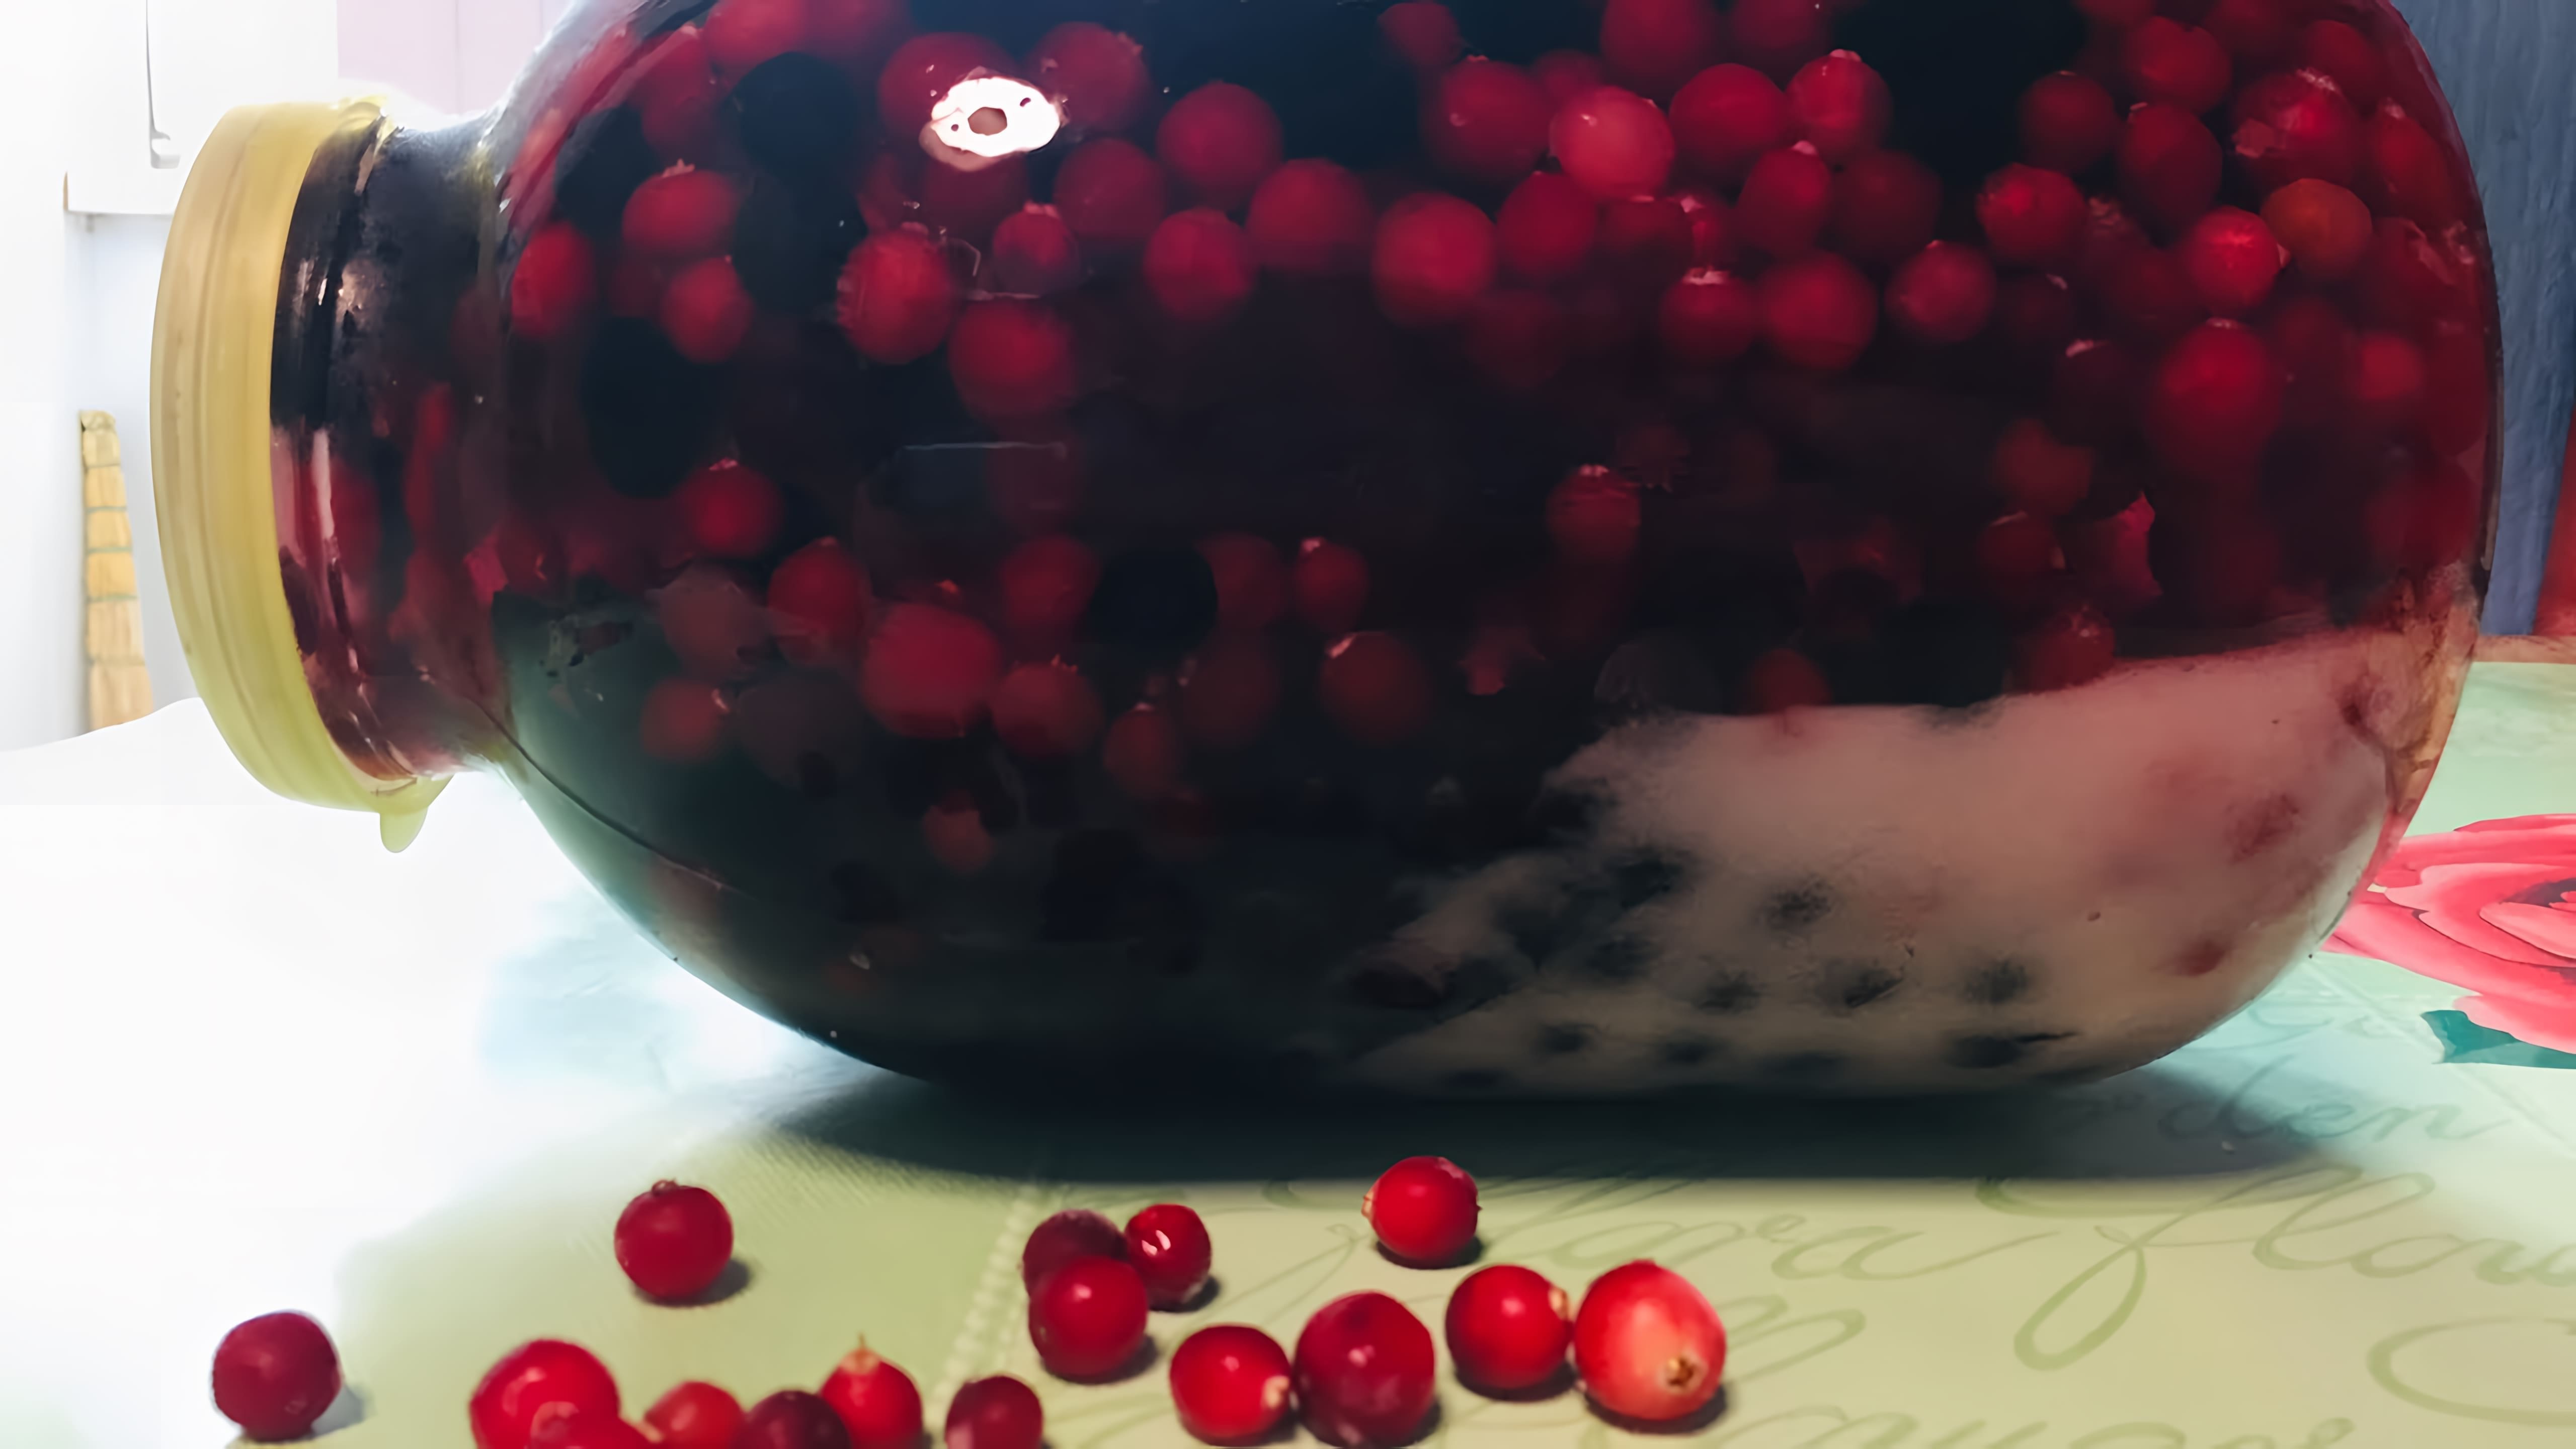 В этом видео демонстрируется процесс приготовления настойки из замороженных ягод